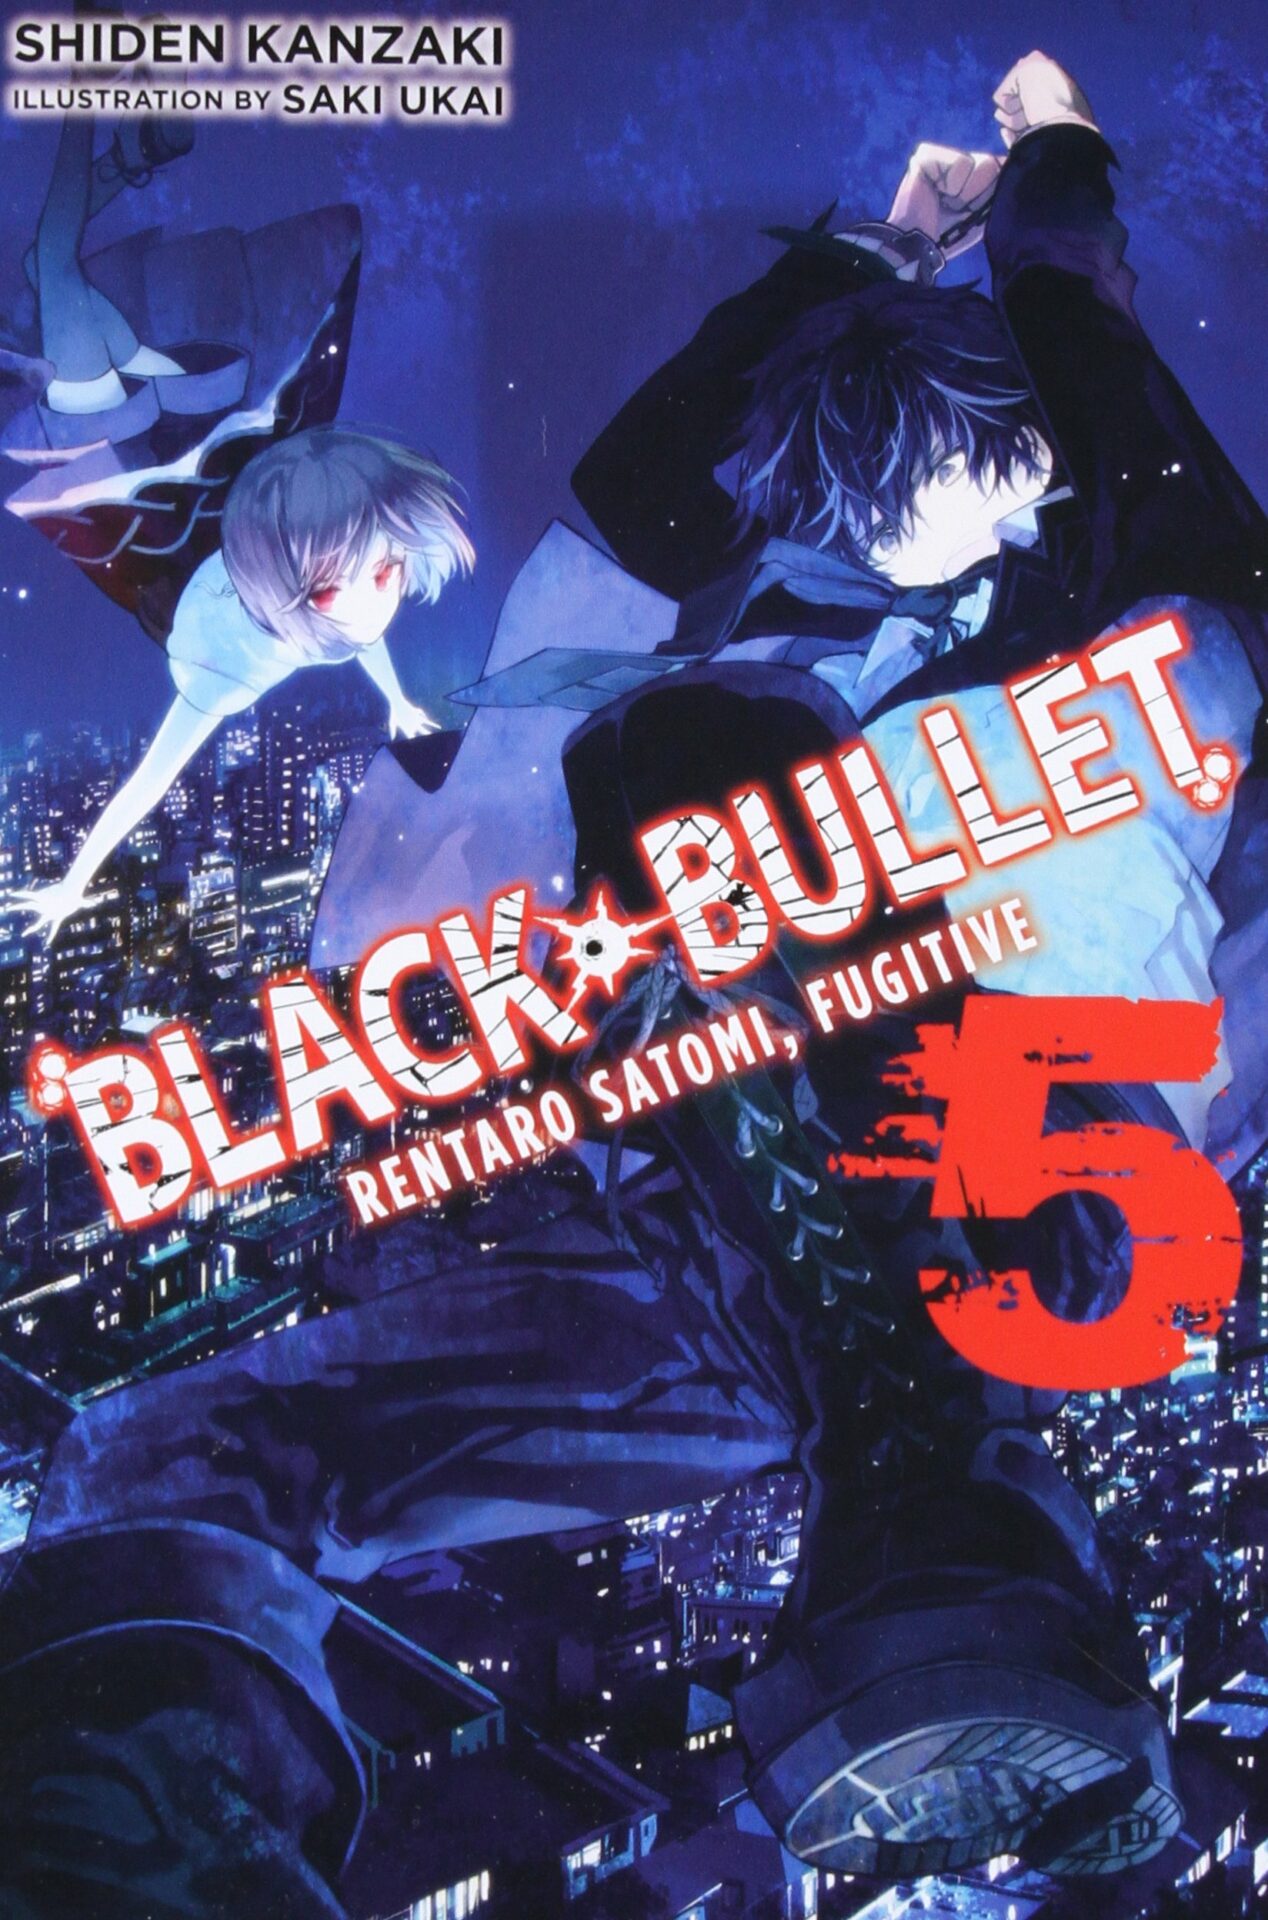 2ª temporada de Black Bullet: data de lançamento, personagens